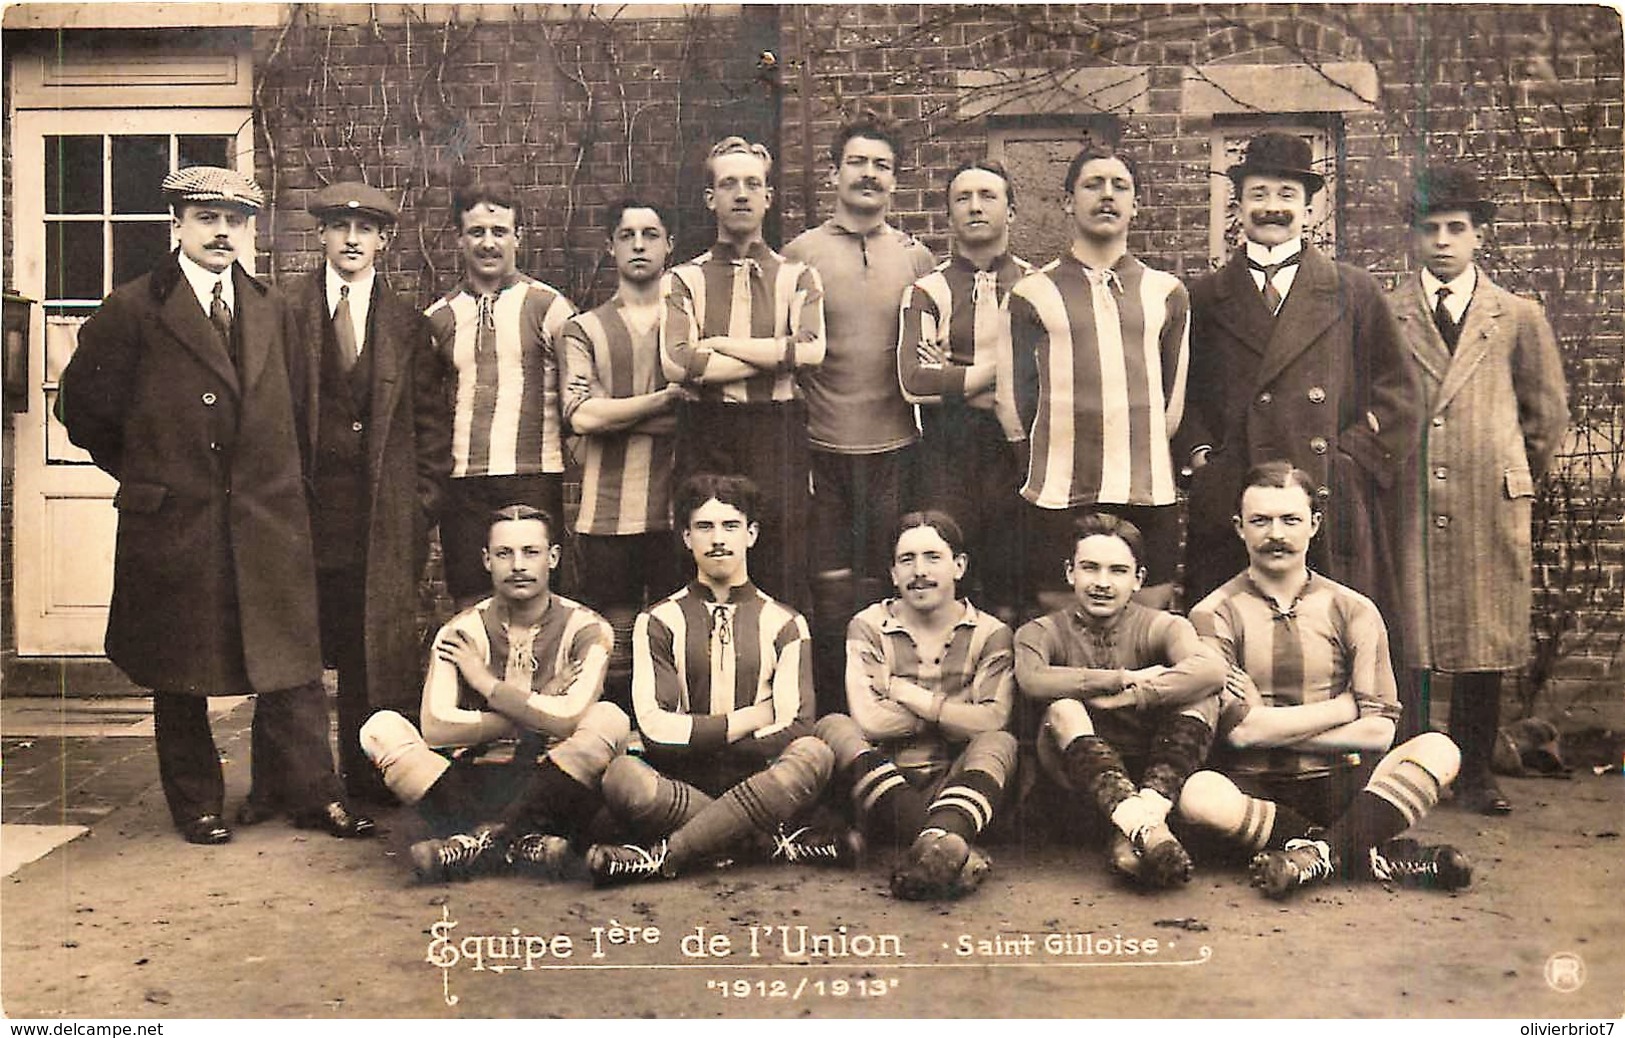 Bruxelles - St-Gilles - Equipe 1ere De L' Union St. Gilloise - 1912/1913 - Football - Un Trou De Punaise - St-Gilles - St-Gillis